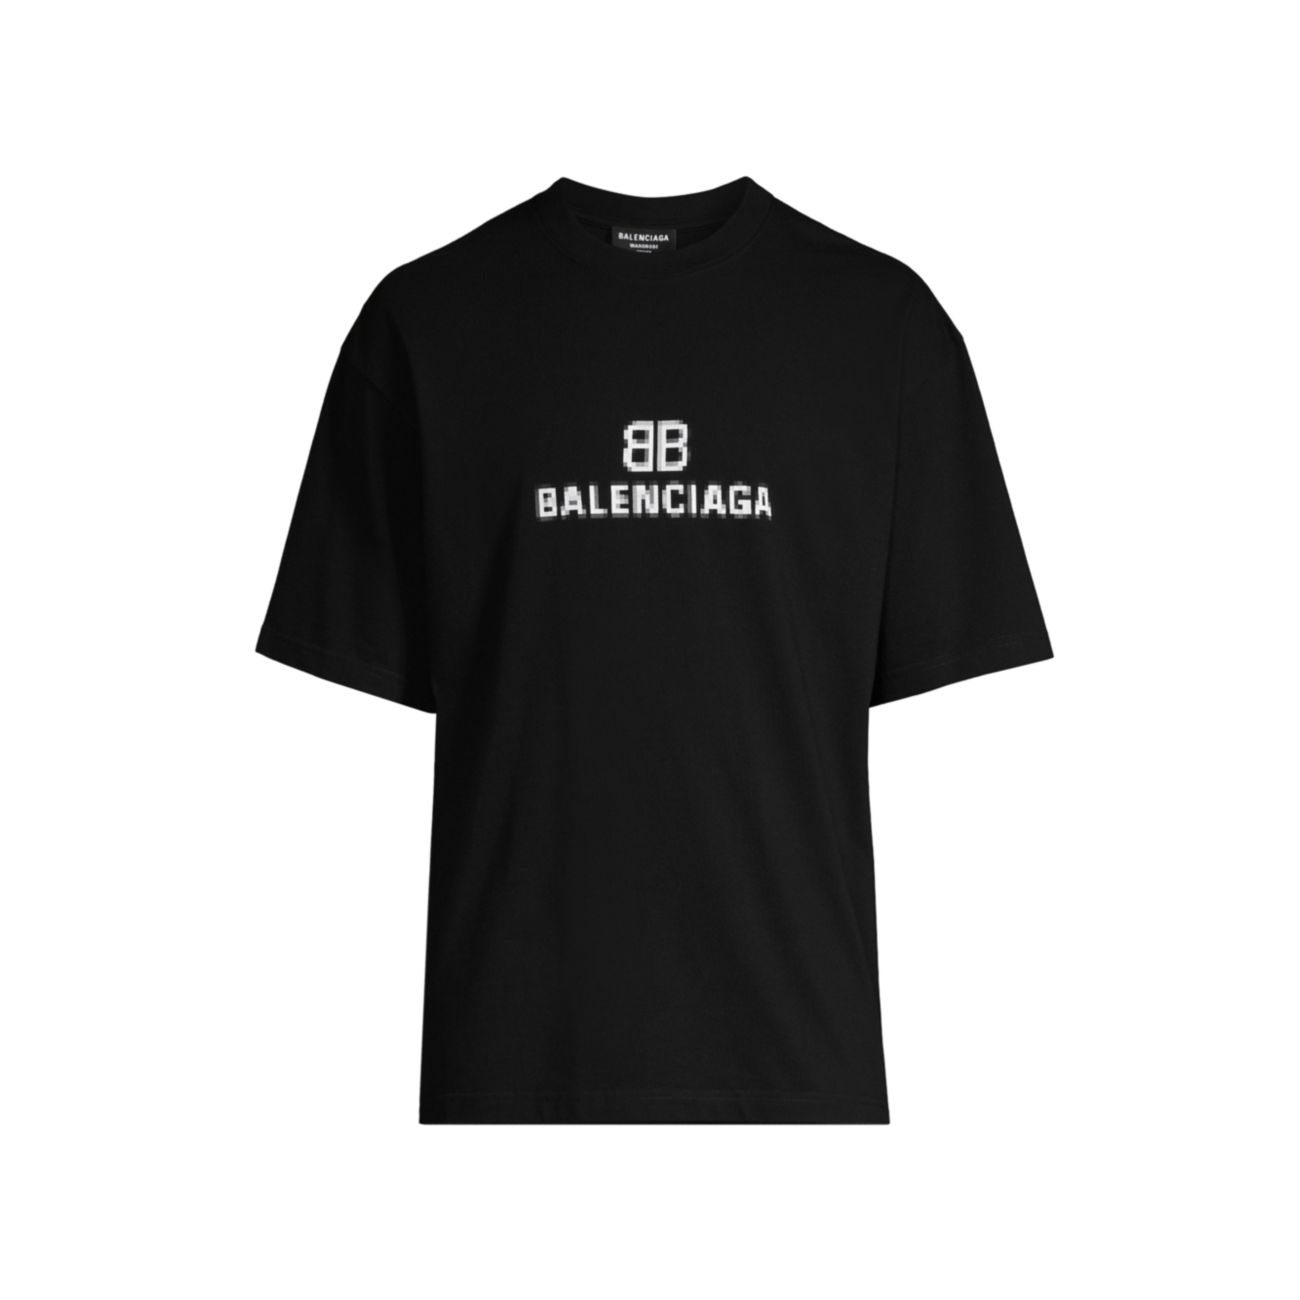 Хлопковая футболка с монограммой и логотипом Balenciaga